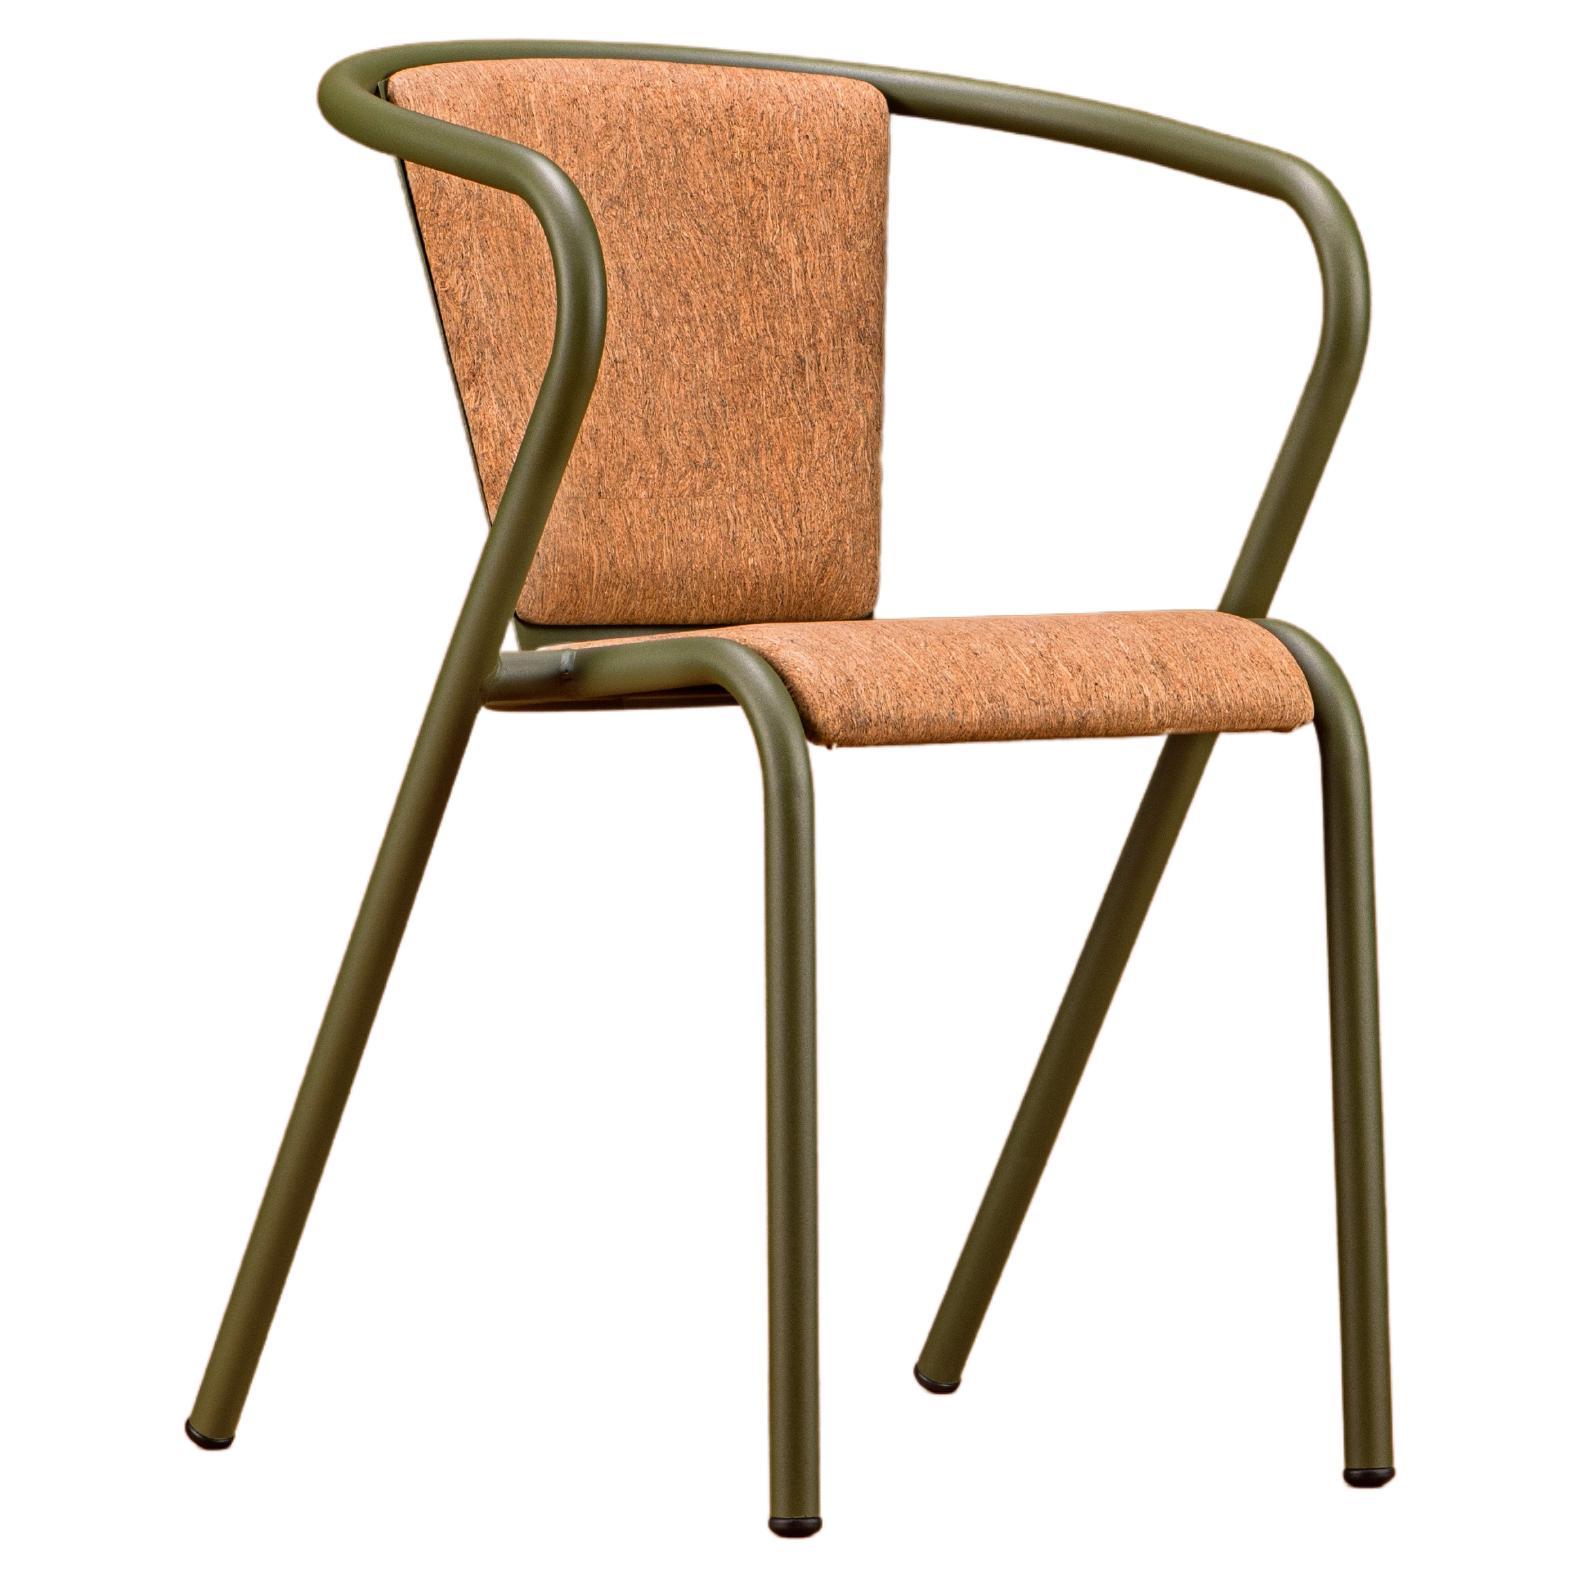 Moderner BICA-Sessel aus Stahl, Oliv, Polsterung aus Naturkork